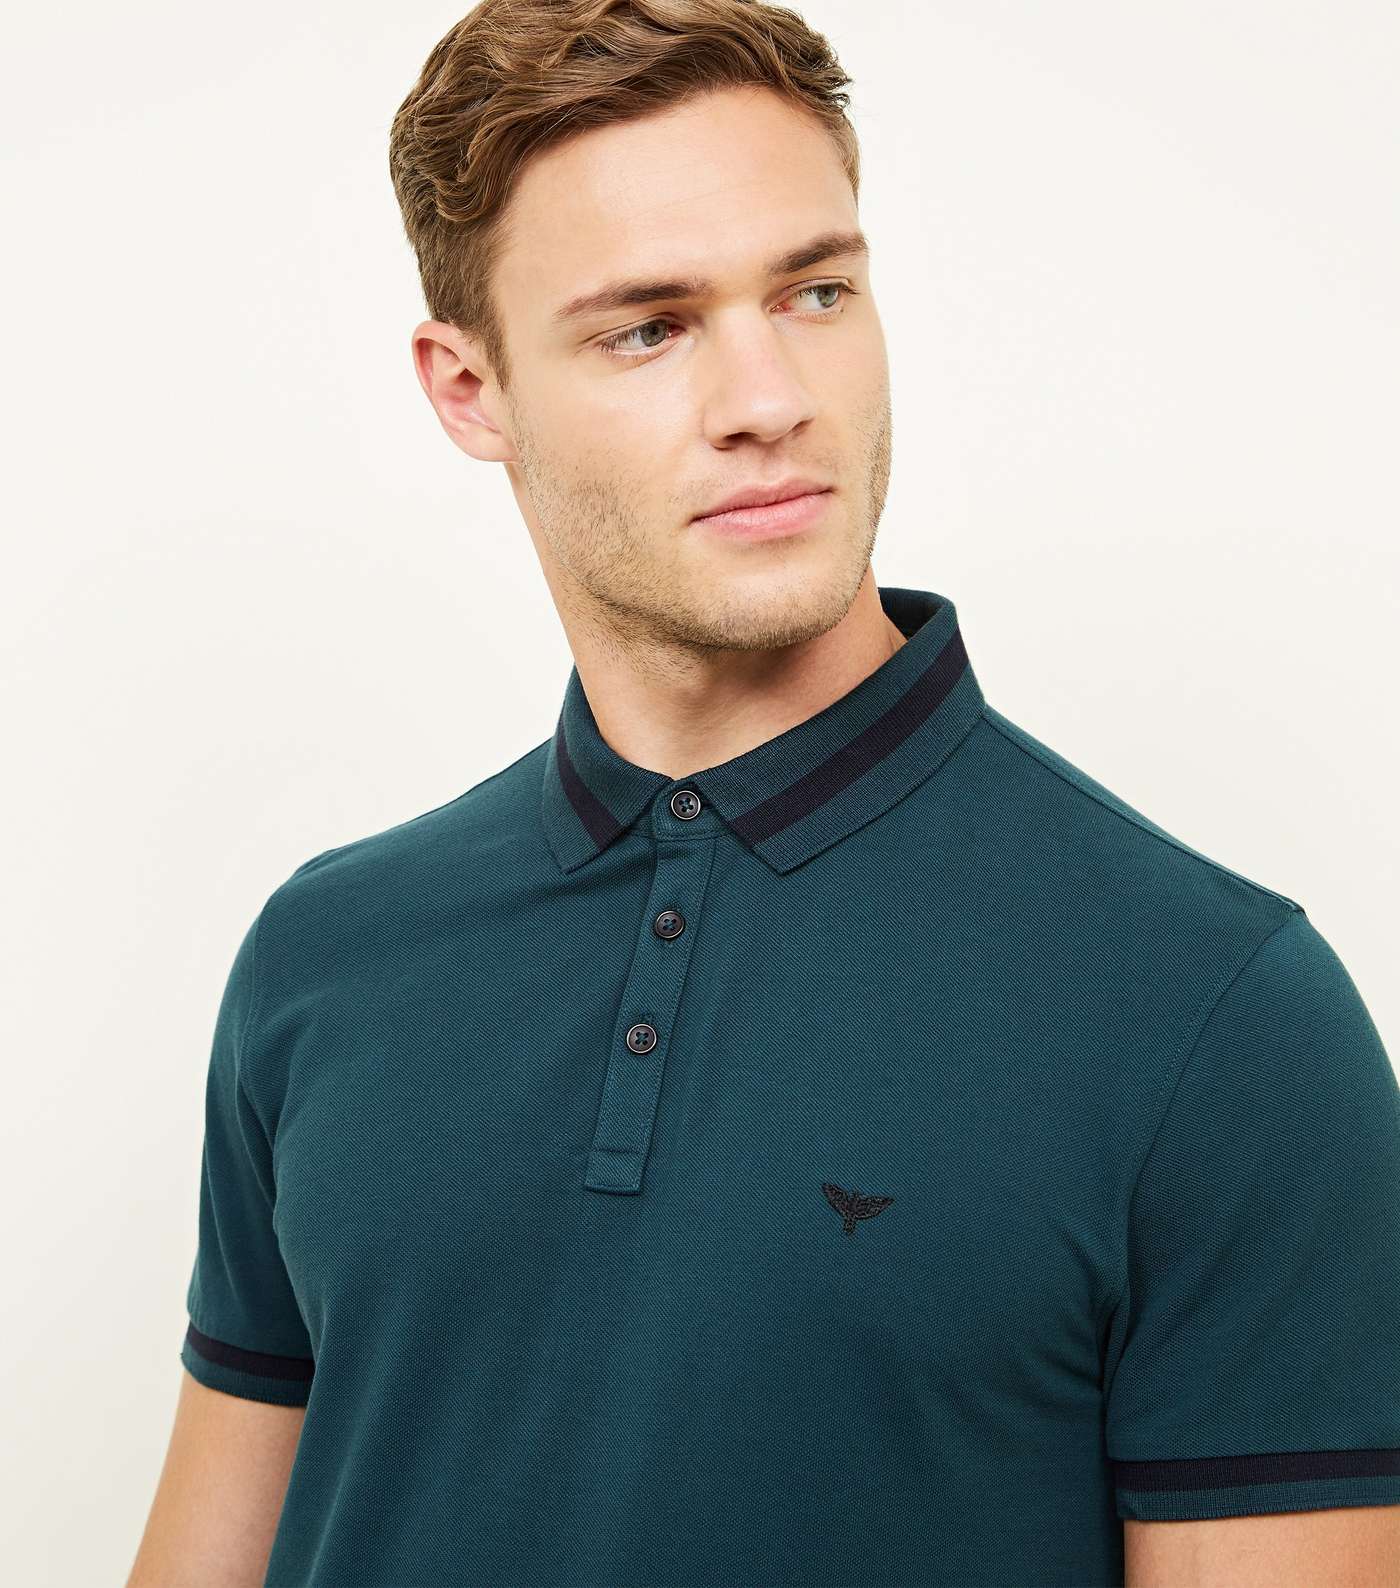 Teal Stripe Collar Polo Shirt Image 5